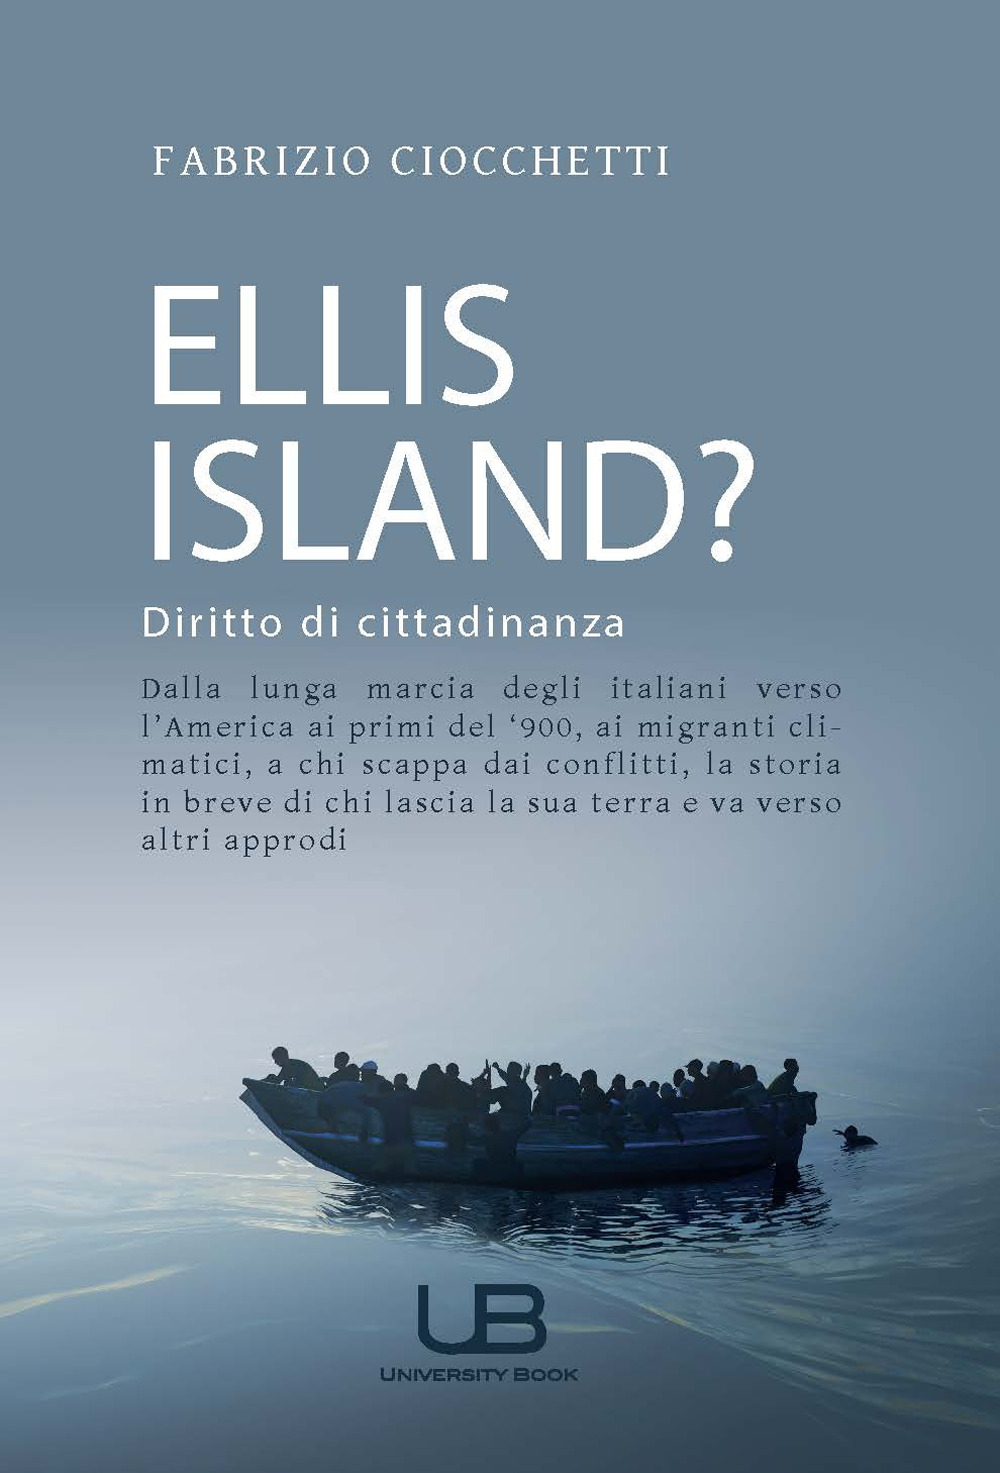 Ellis Island? Diritto di cittadinanza